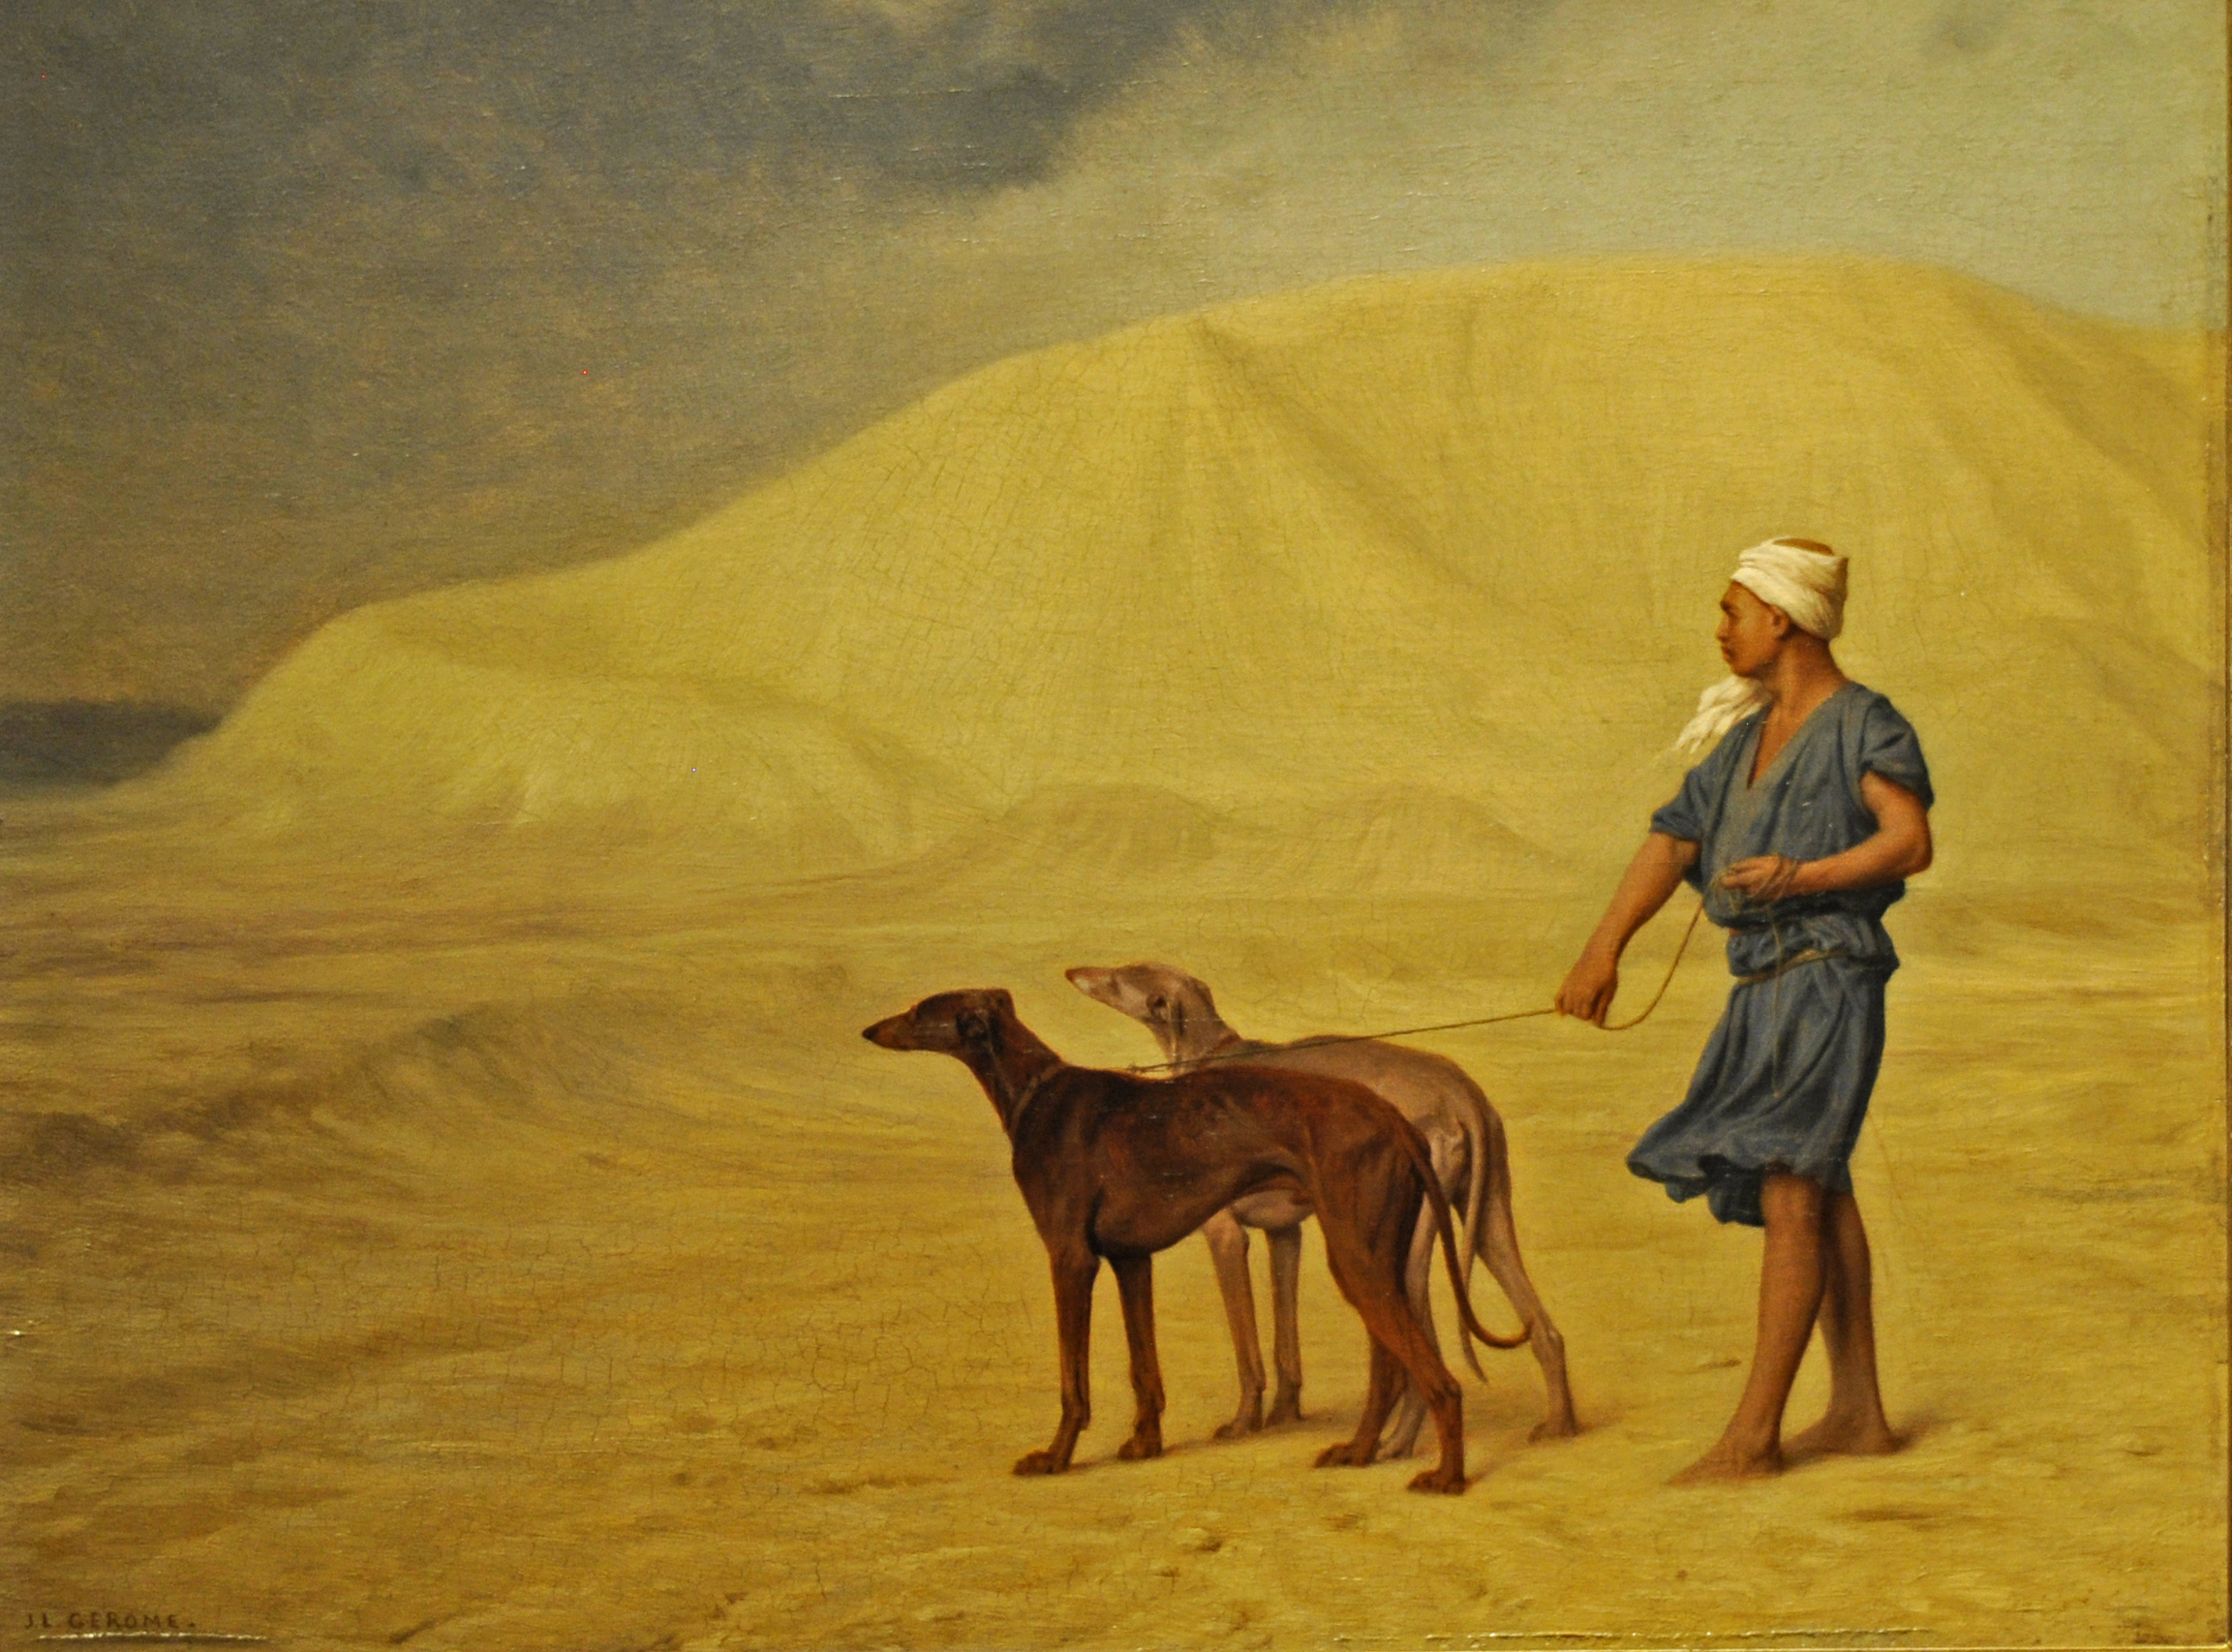 沙漠中 by 让 - 莱昂 · 杰罗姆 - 1867 - 21 x 26.8 cm 